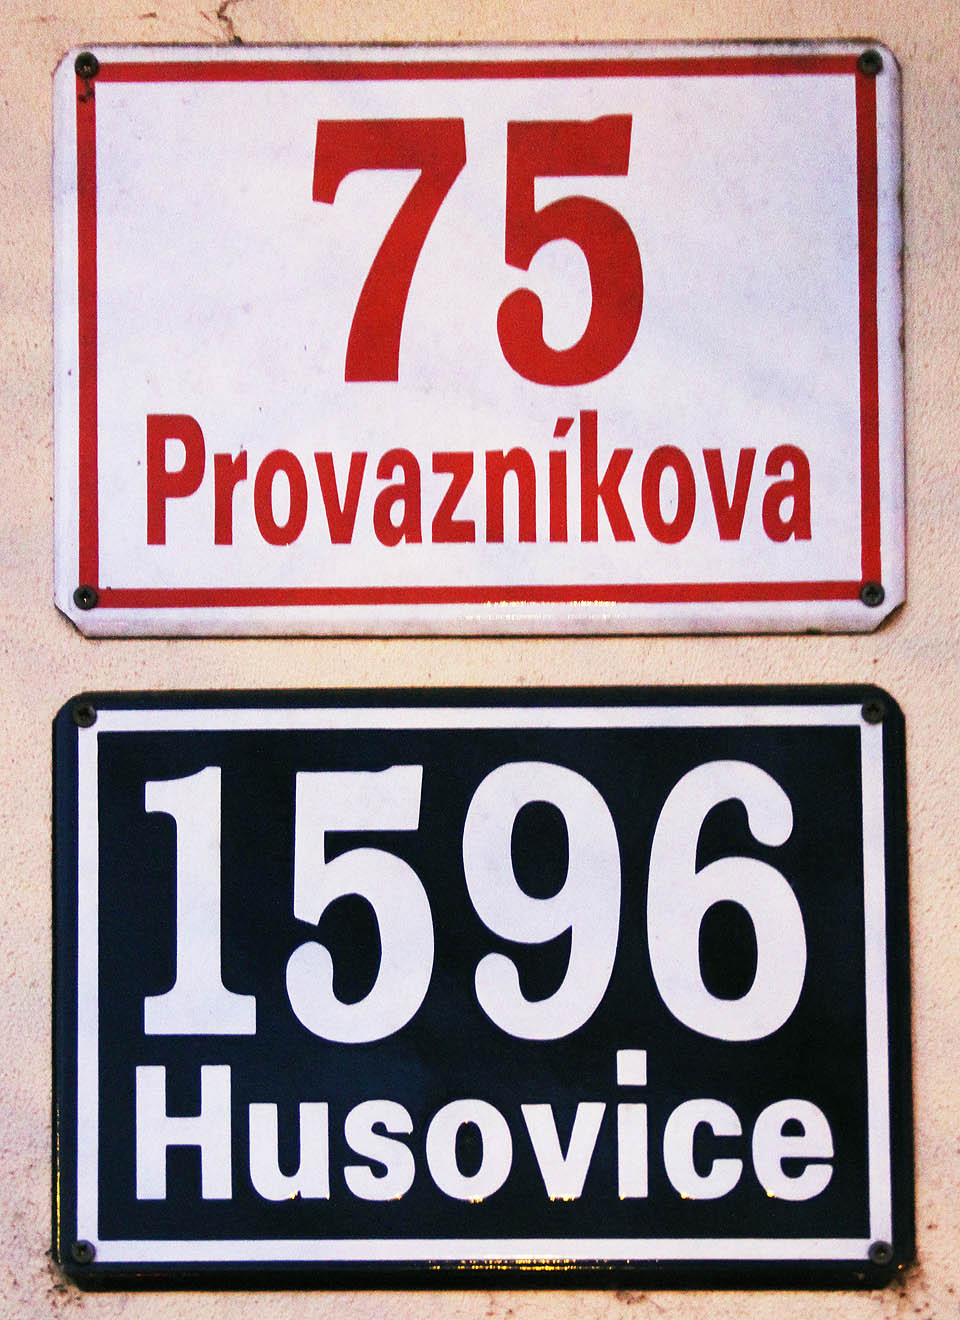 Rodinný dům Provazníkova 75 nesl původně adresu Kohoutova 10.